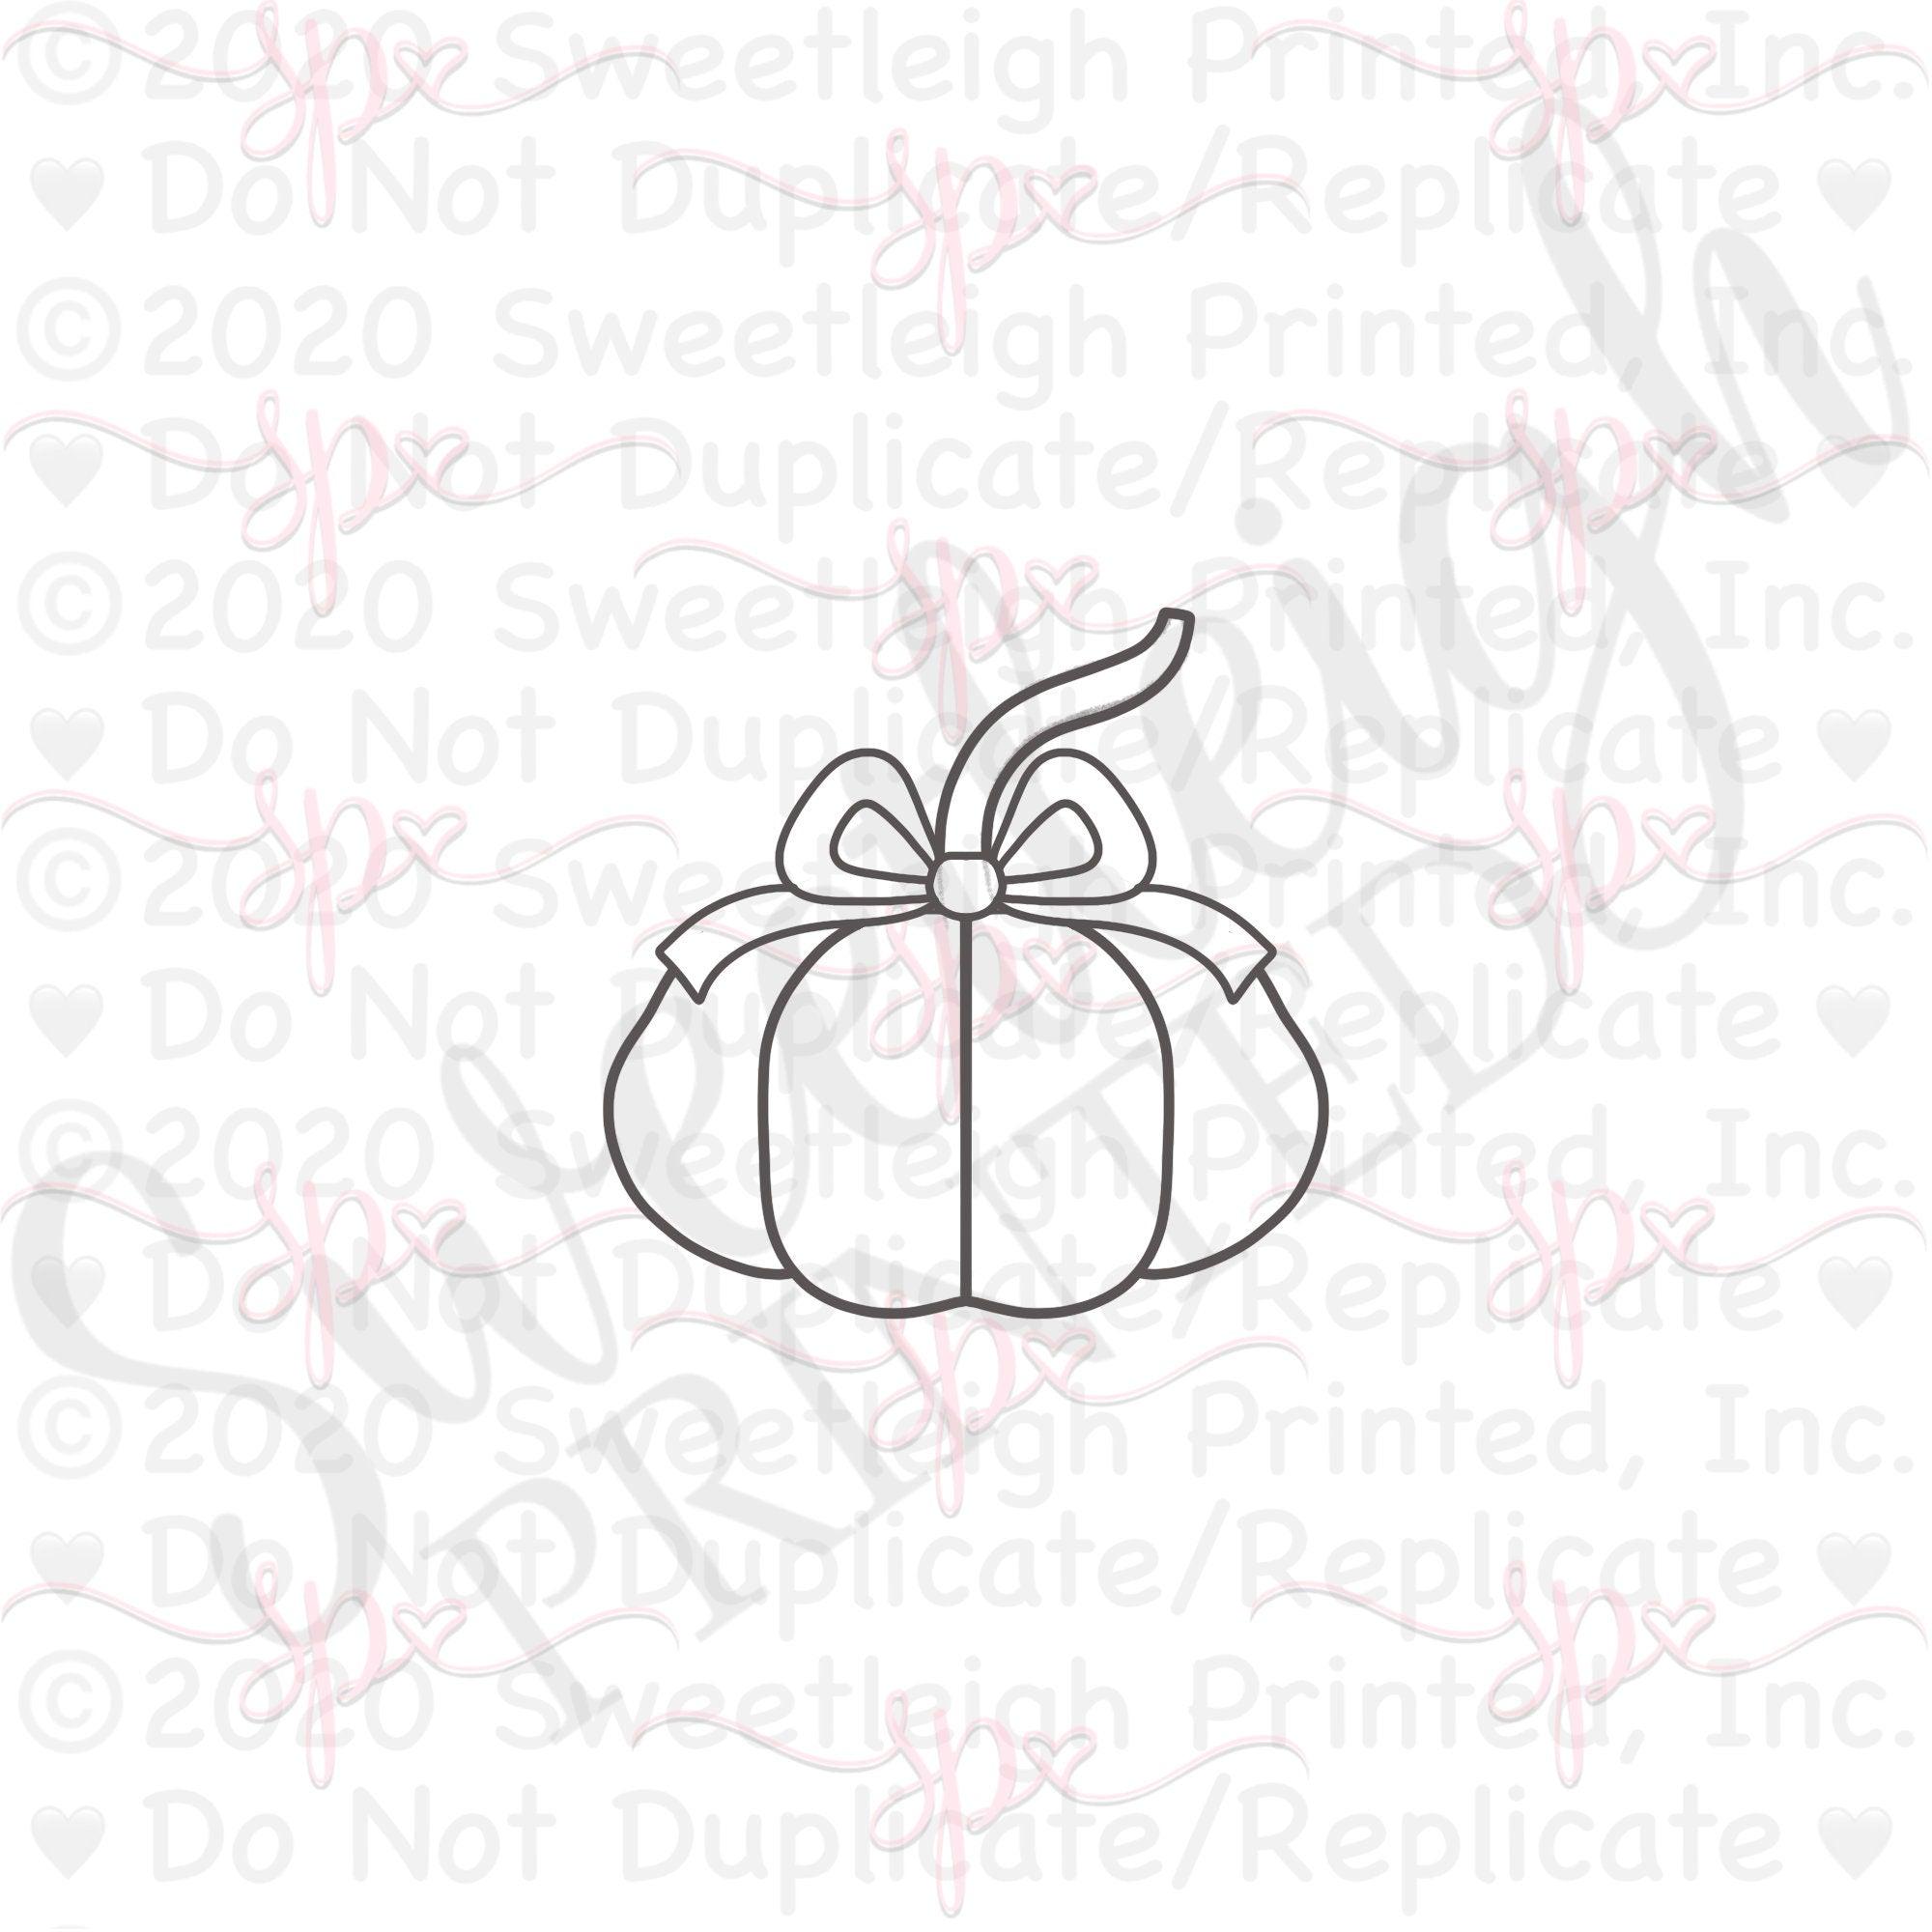 Girly Autumn Pumpkin Cookie Cutter - Sweetleigh 